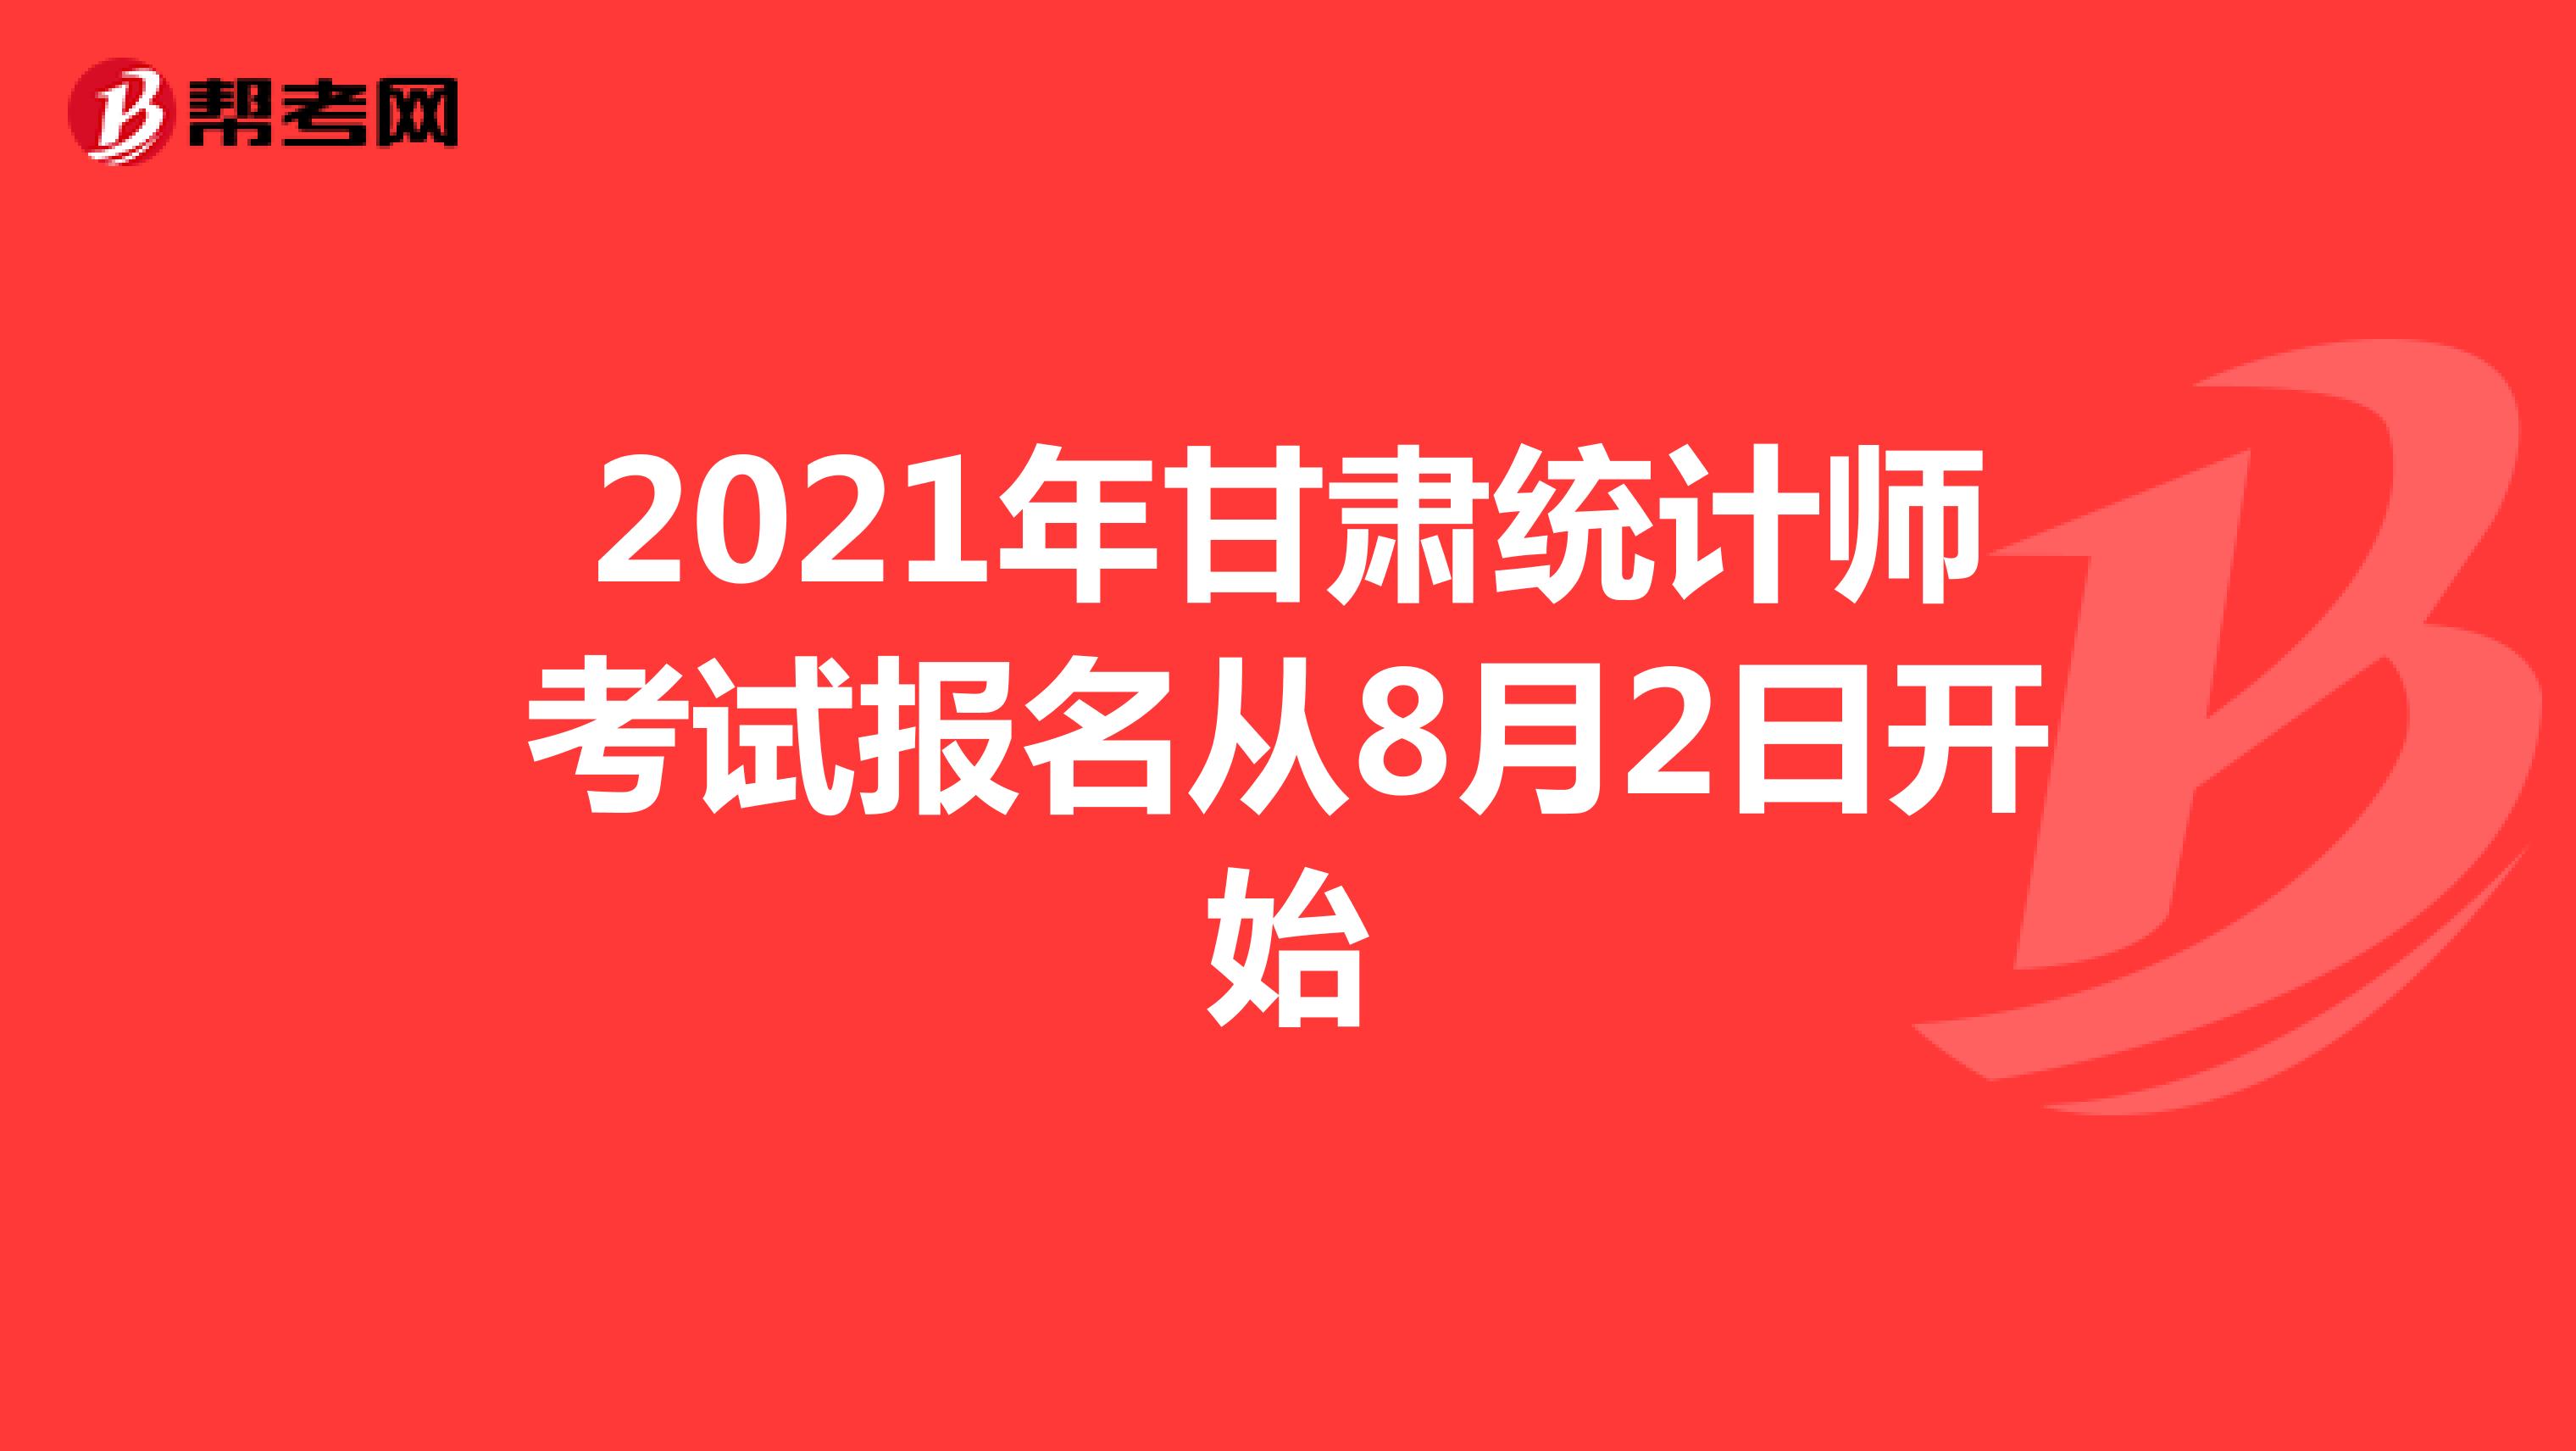 2021年甘肃统计师考试报名从8月2日开始